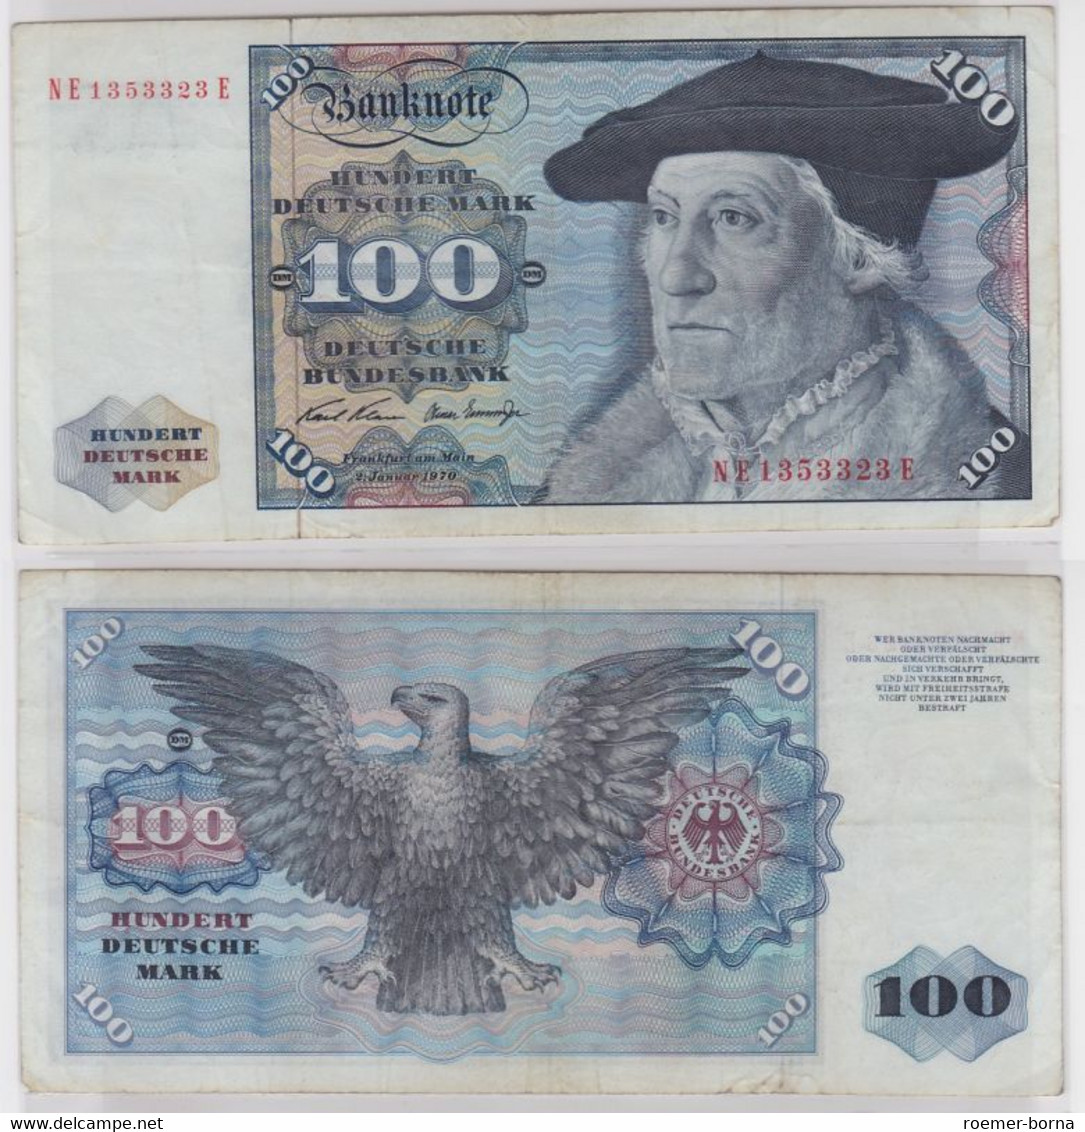 T146504 Banknote 100 DM Deutsche Mark Ro. 273b Schein 2.Jan 1970 KN NE 1353323 E - 100 Deutsche Mark